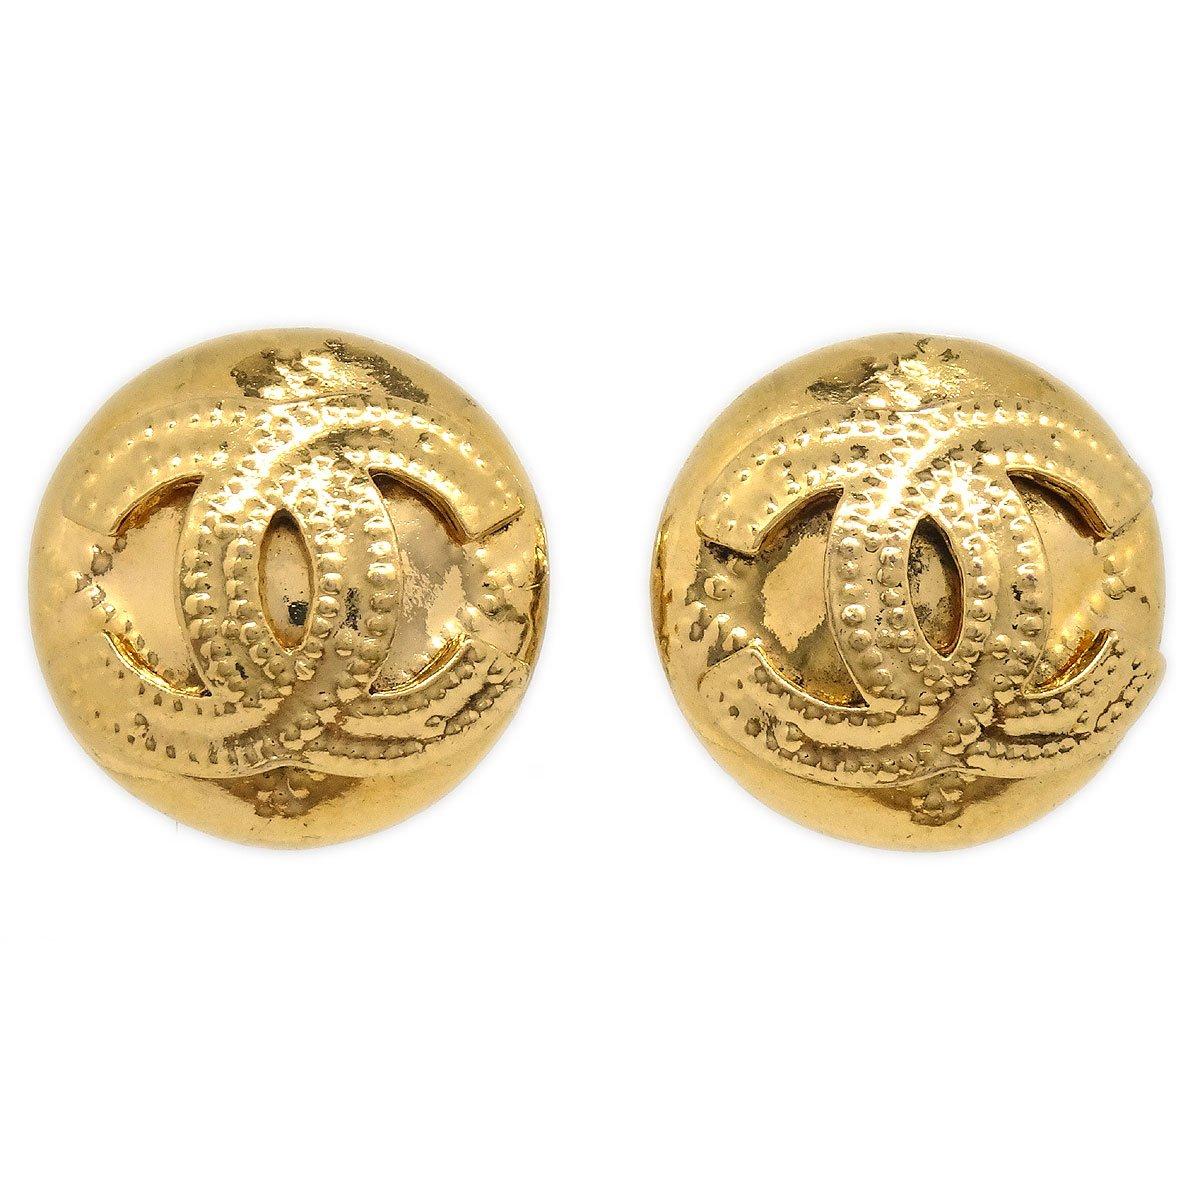 Chanel 1986-1994 Earrings Gold 2336 in Metallic